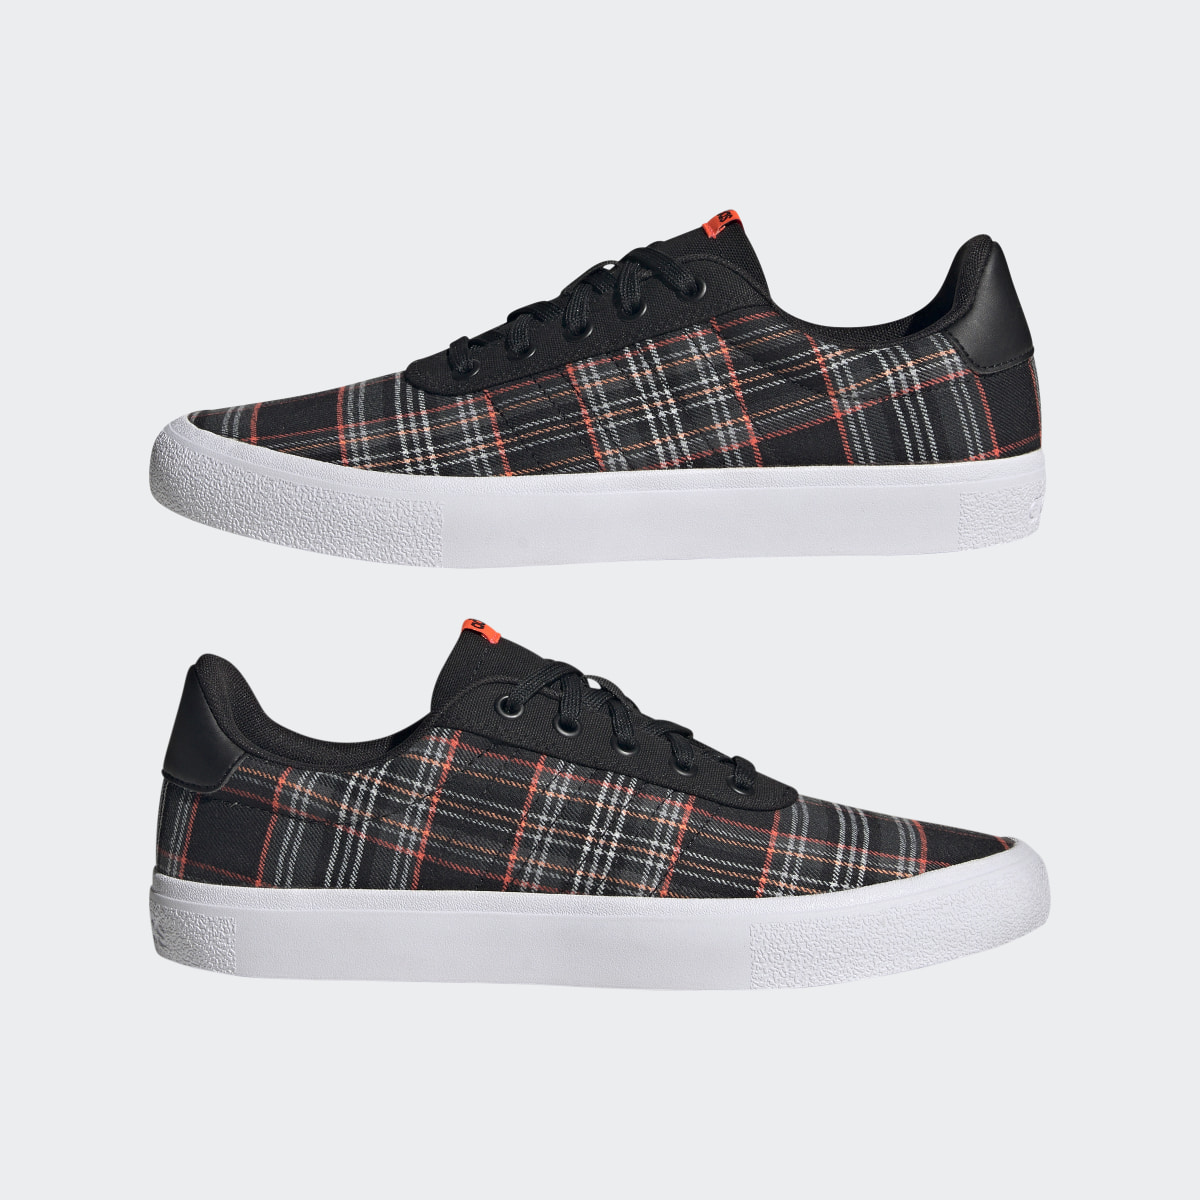 Adidas Chaussure Vulc Raid3r Lifestyle Skateboarding 3-Stripes Branding. 8